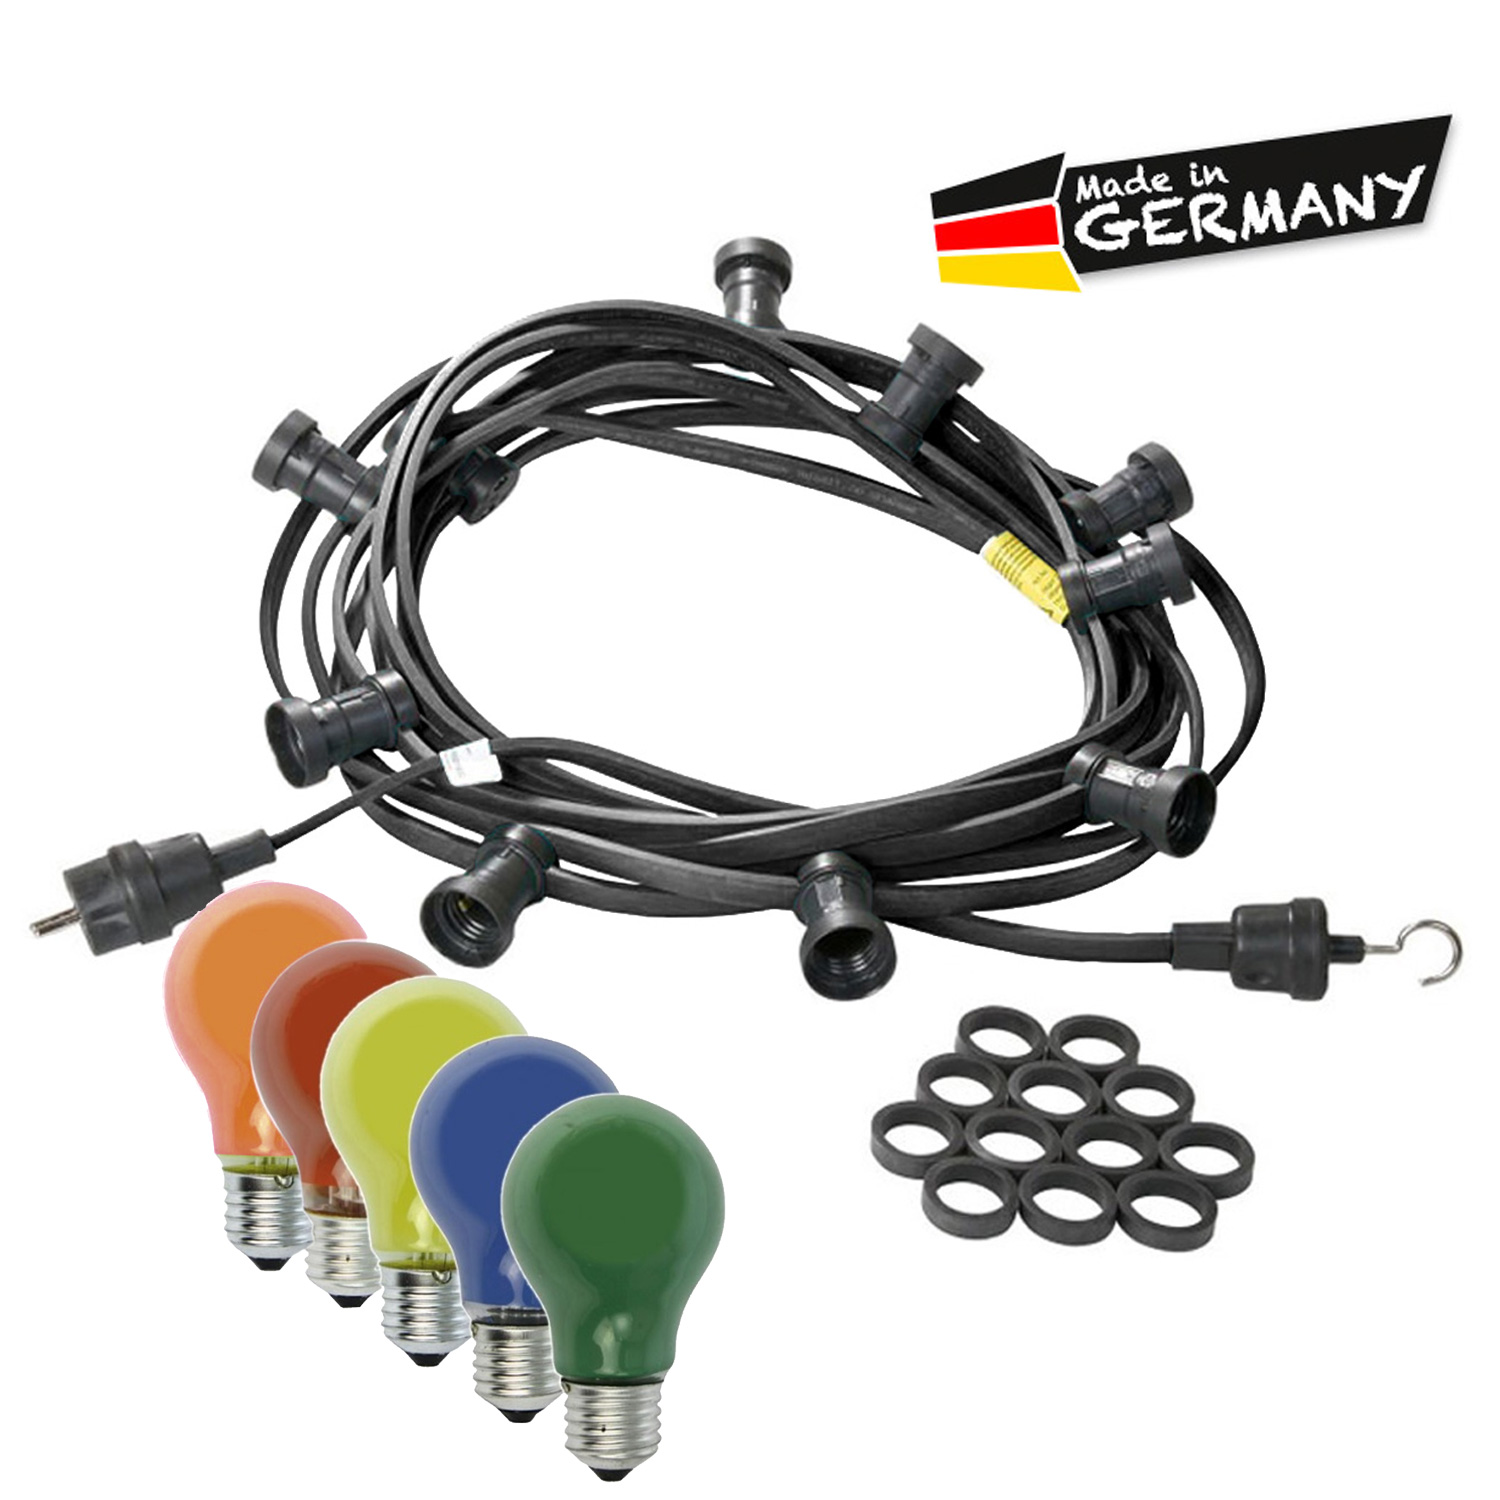 Illu-/Partylichterkette 40m - Außenlichterkette schwarz - Made in Germany - 60 bunte 25W Glühlampen